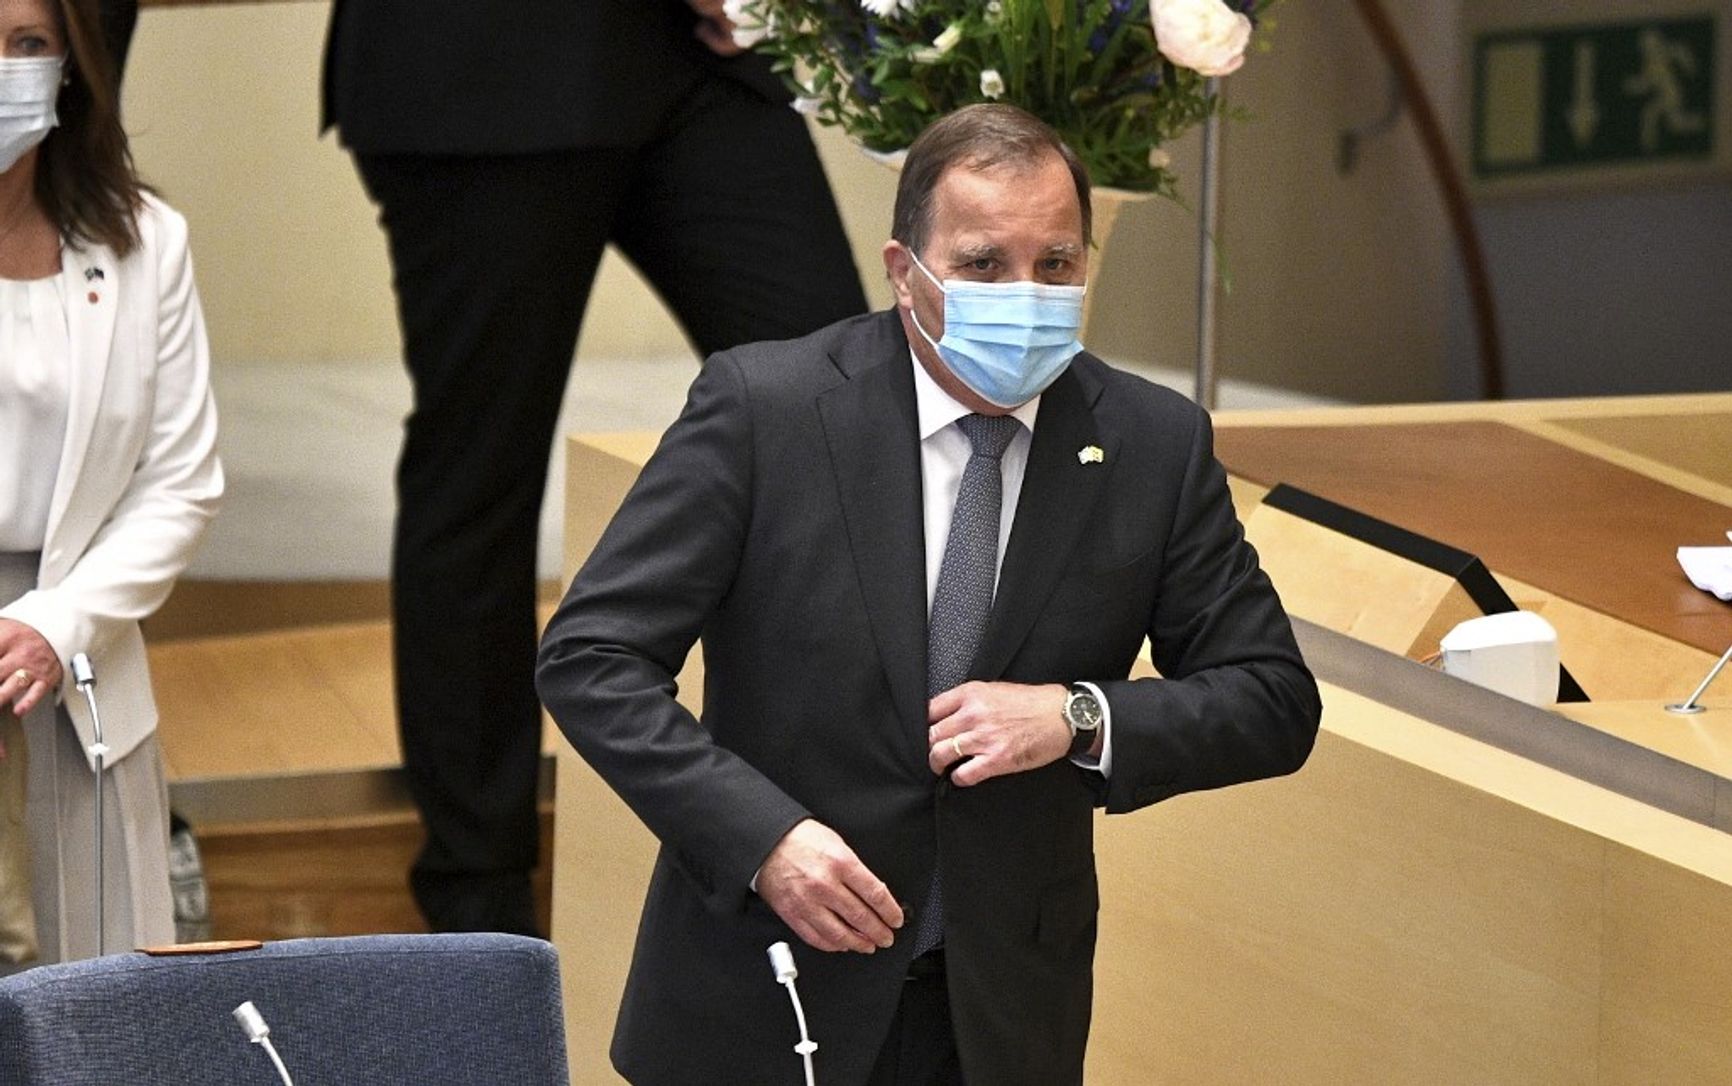 Стефан Лёвен - первый премьер-министр в новейшей истории Швеции, получивший вотум недоверия 